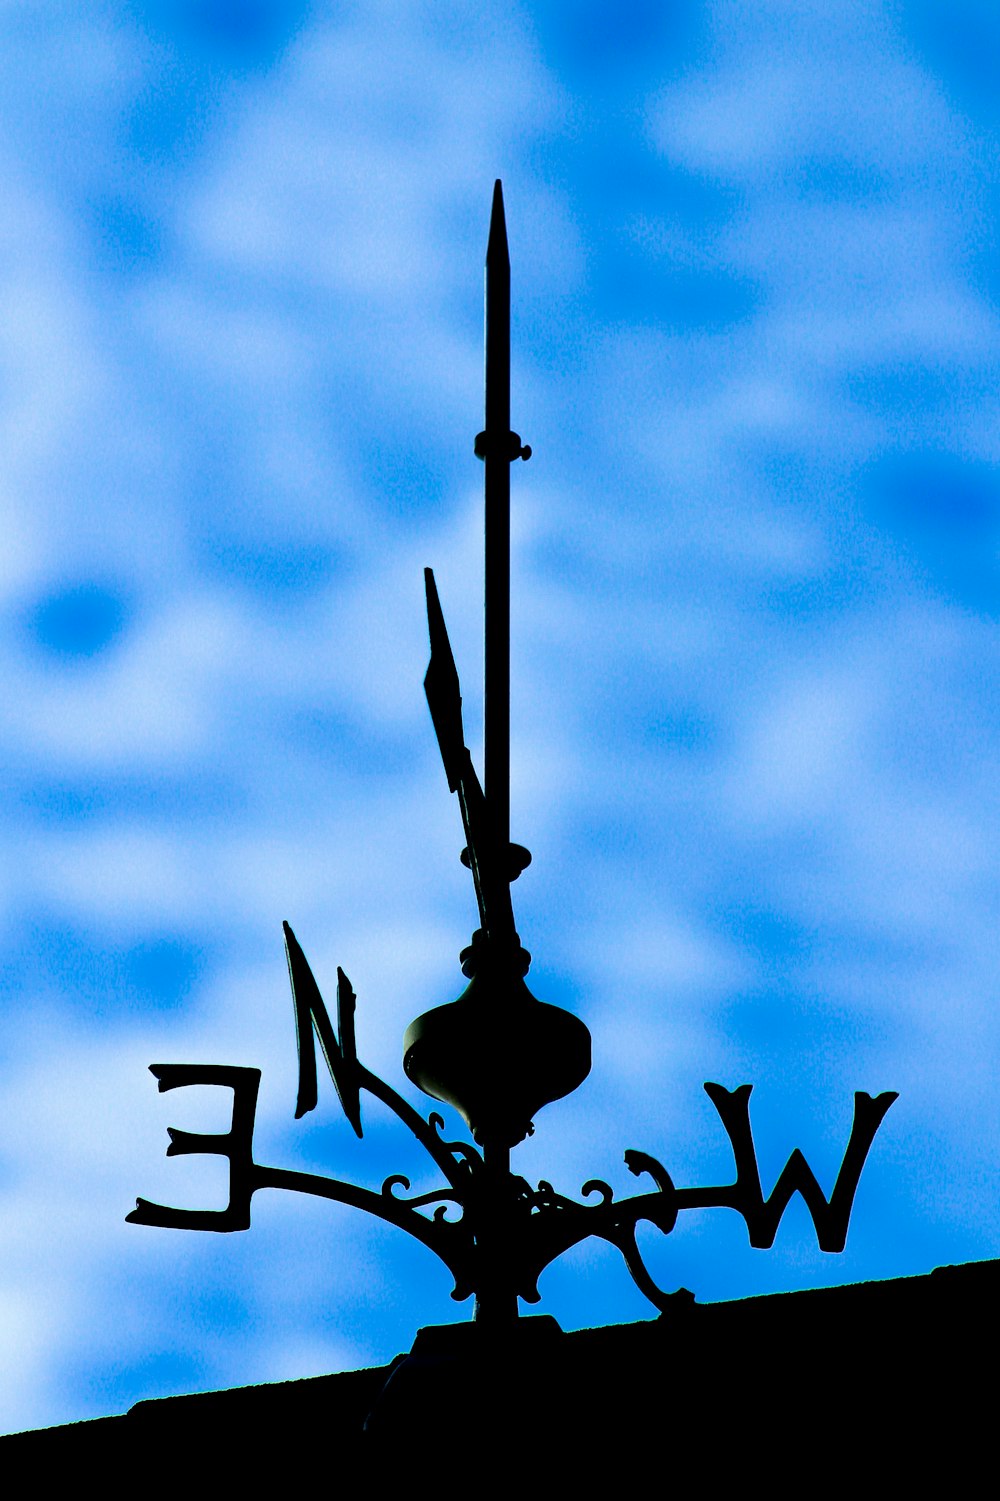 black metal lamp post under blue sky